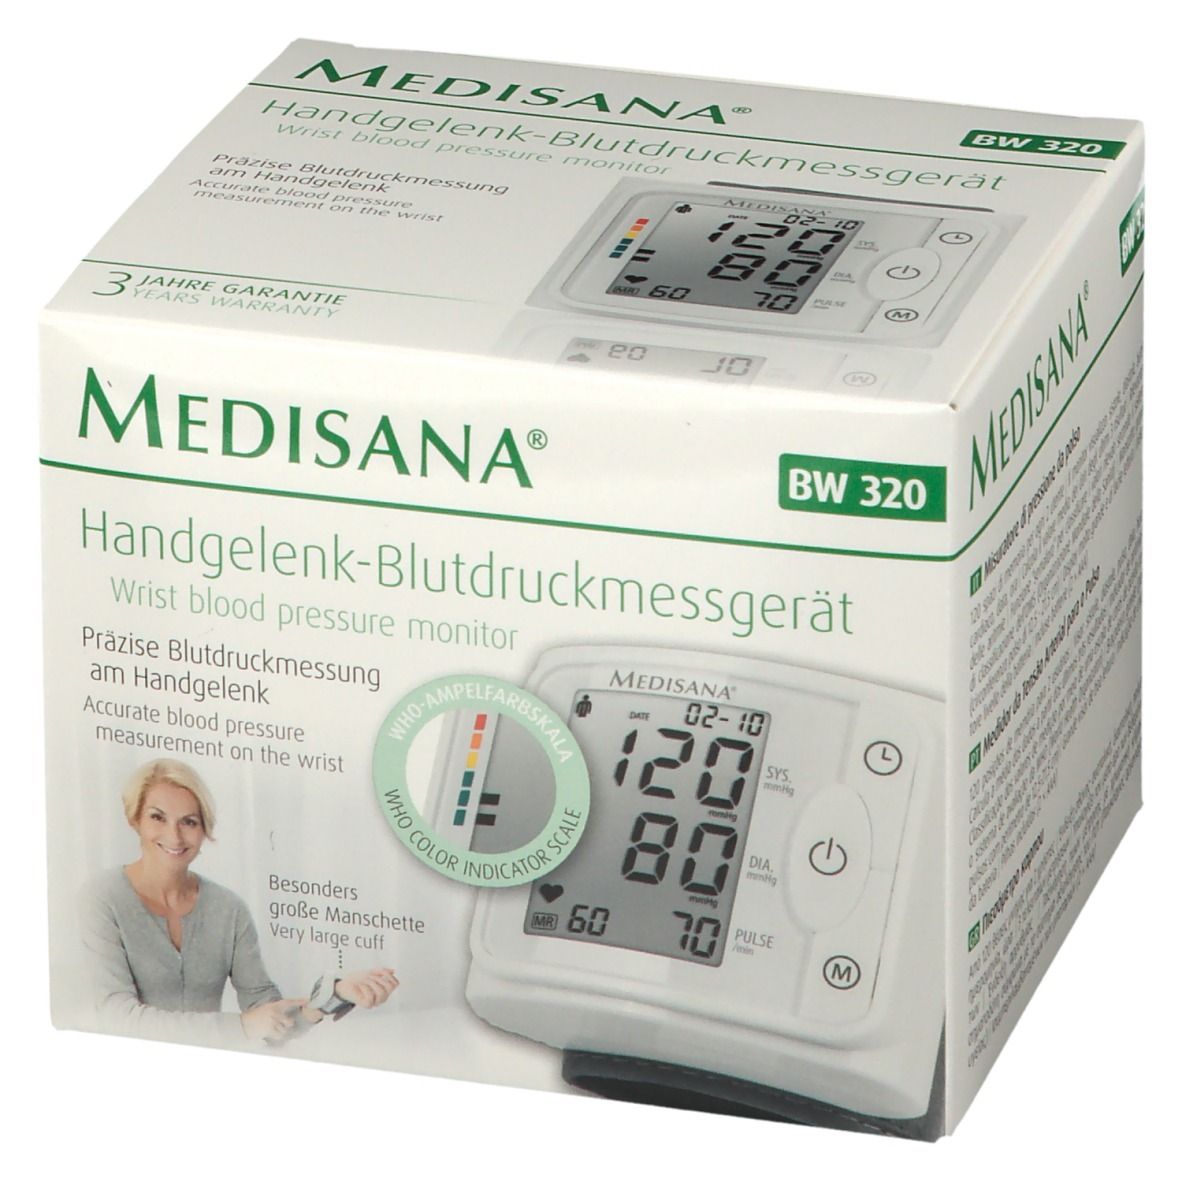 Apotheke St Medisana - 320 BW Redcare 1 Handgelenk-Blutdruckmessgerät